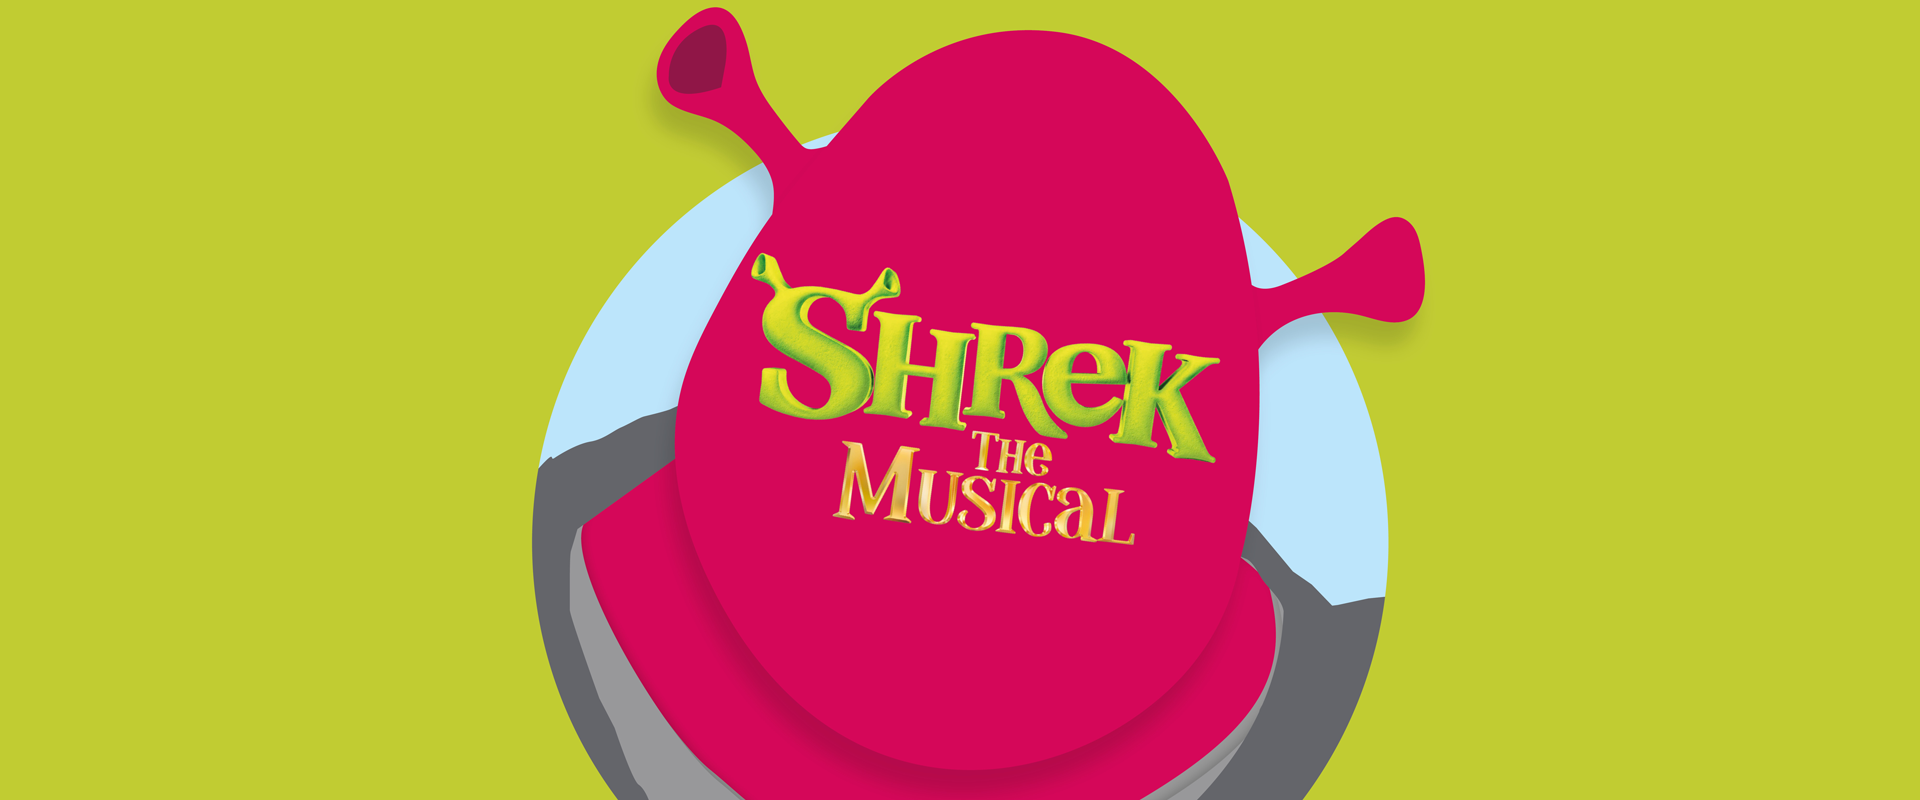 Reech sponsor Shrek The Musical at Theatre Severn